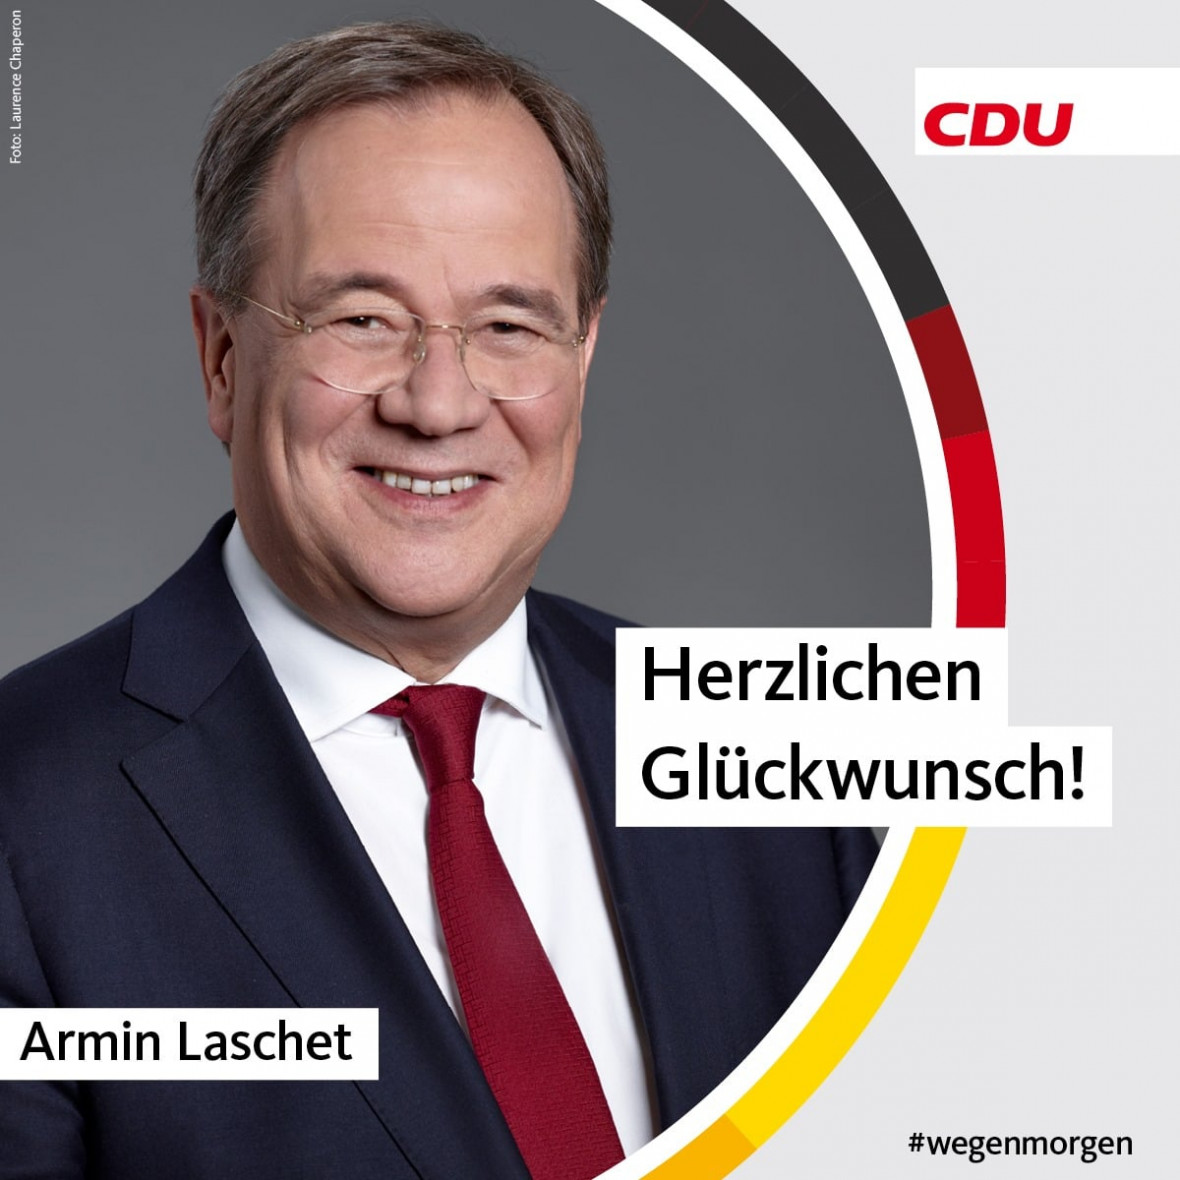 Glückwunsch Armin Laschet